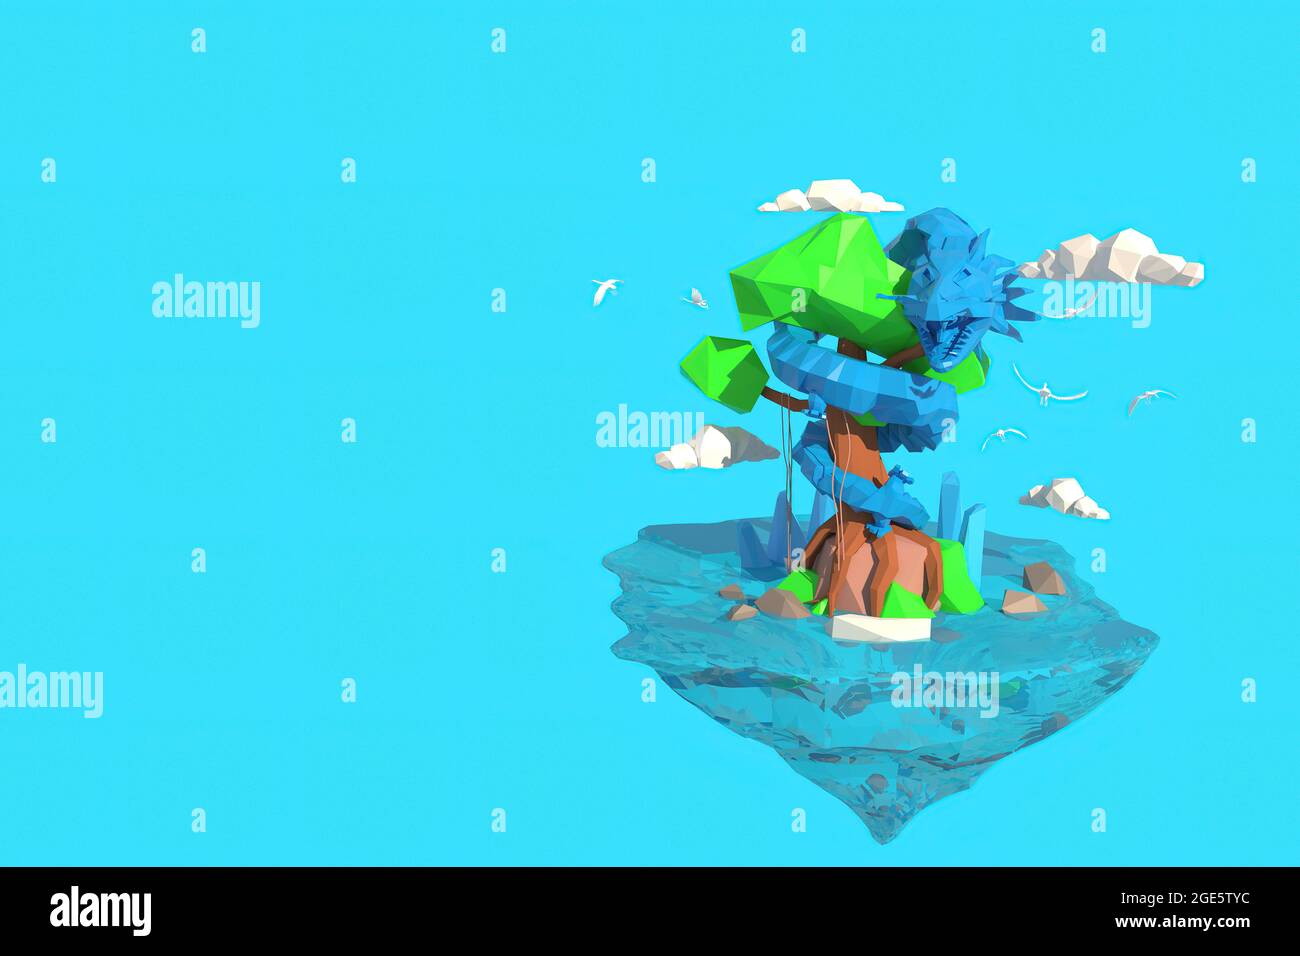 Illustrateur 3D d'un dragon enroulé autour d'un arbre. Rendu 3D d'un modèle de polygone bas incluant la sélection de la trajectoire Banque D'Images